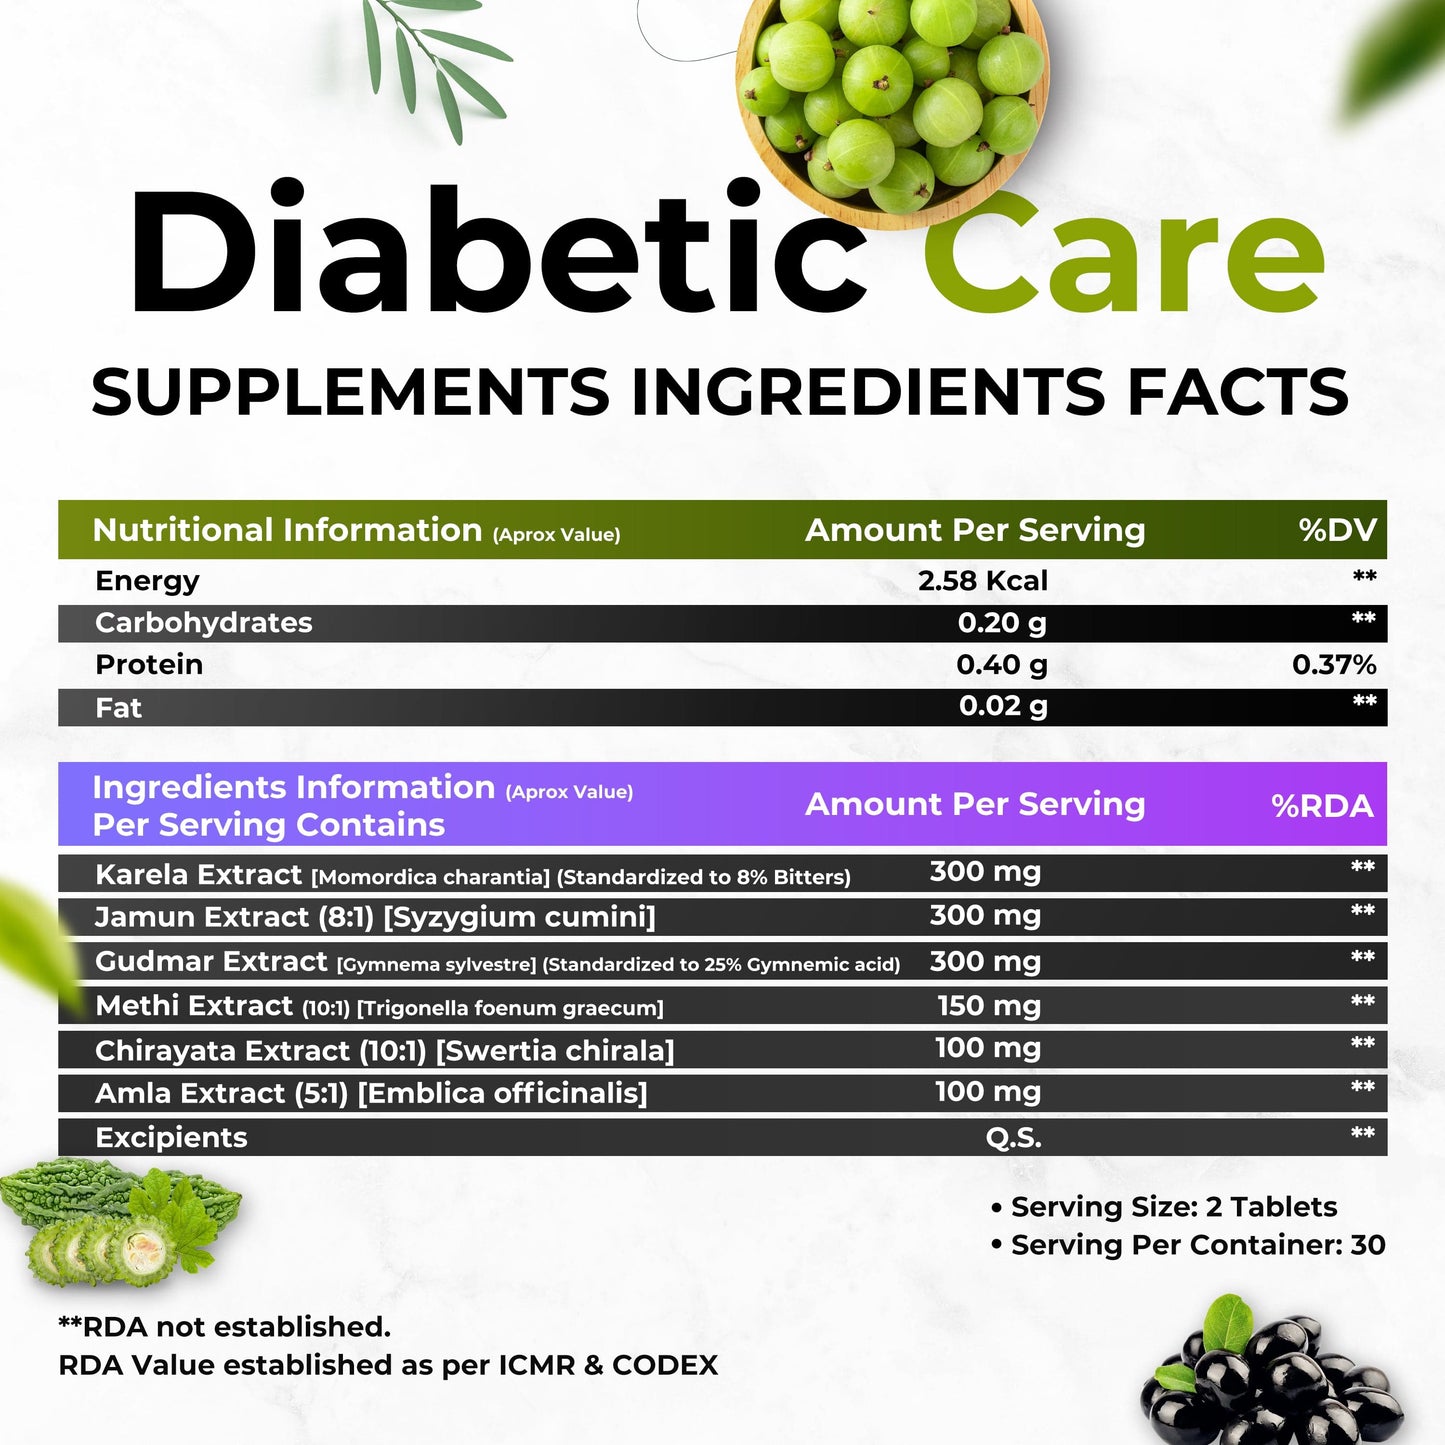 Health Veda Organics Diabetic Care Supplements with Karela, Gudmar, Jamun I 60 Veg Tablets I Manages Blood Sugar Levels I For Both Men & Women